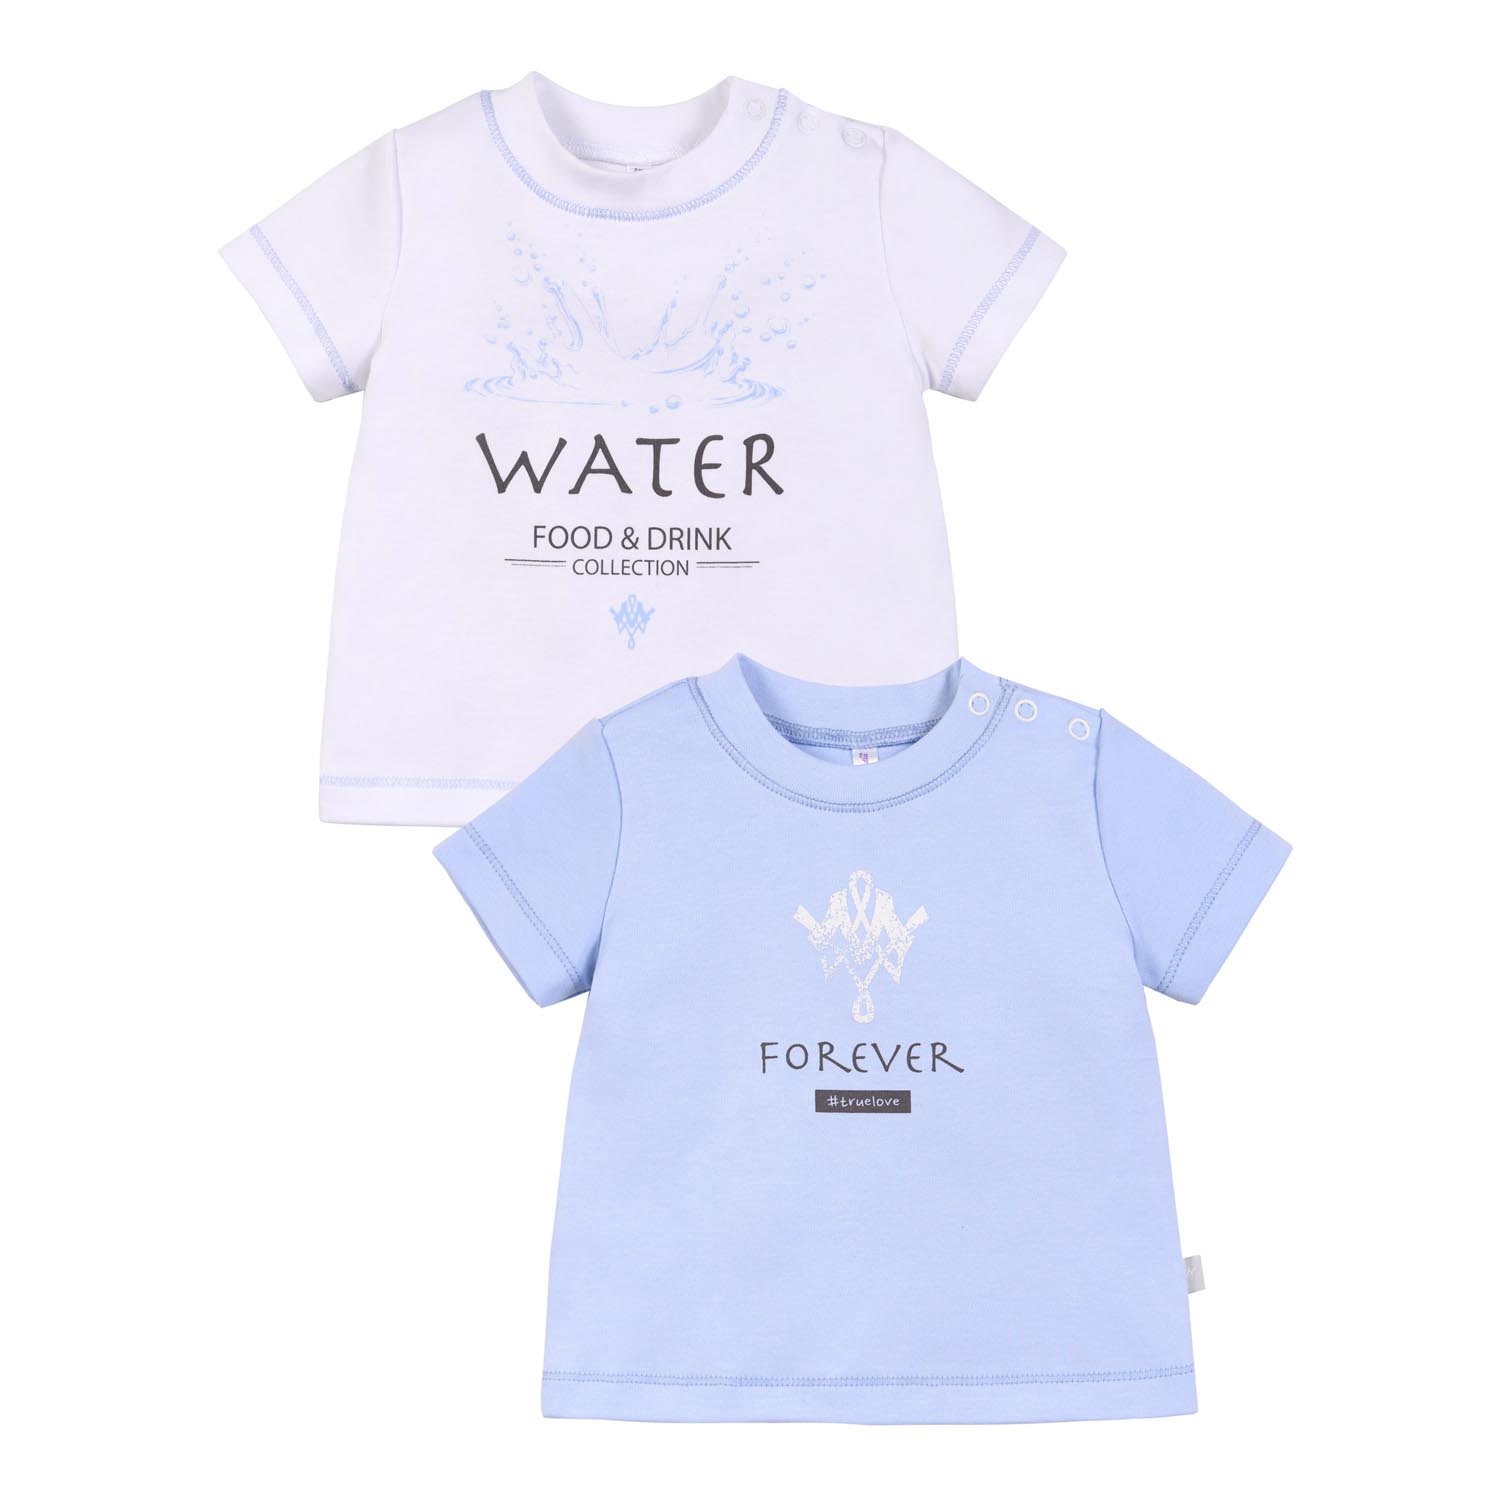 фото Комплект для детей - футболки 2шт. 21-13010 вода, интерлок, мамуляндия белый; голубой 80